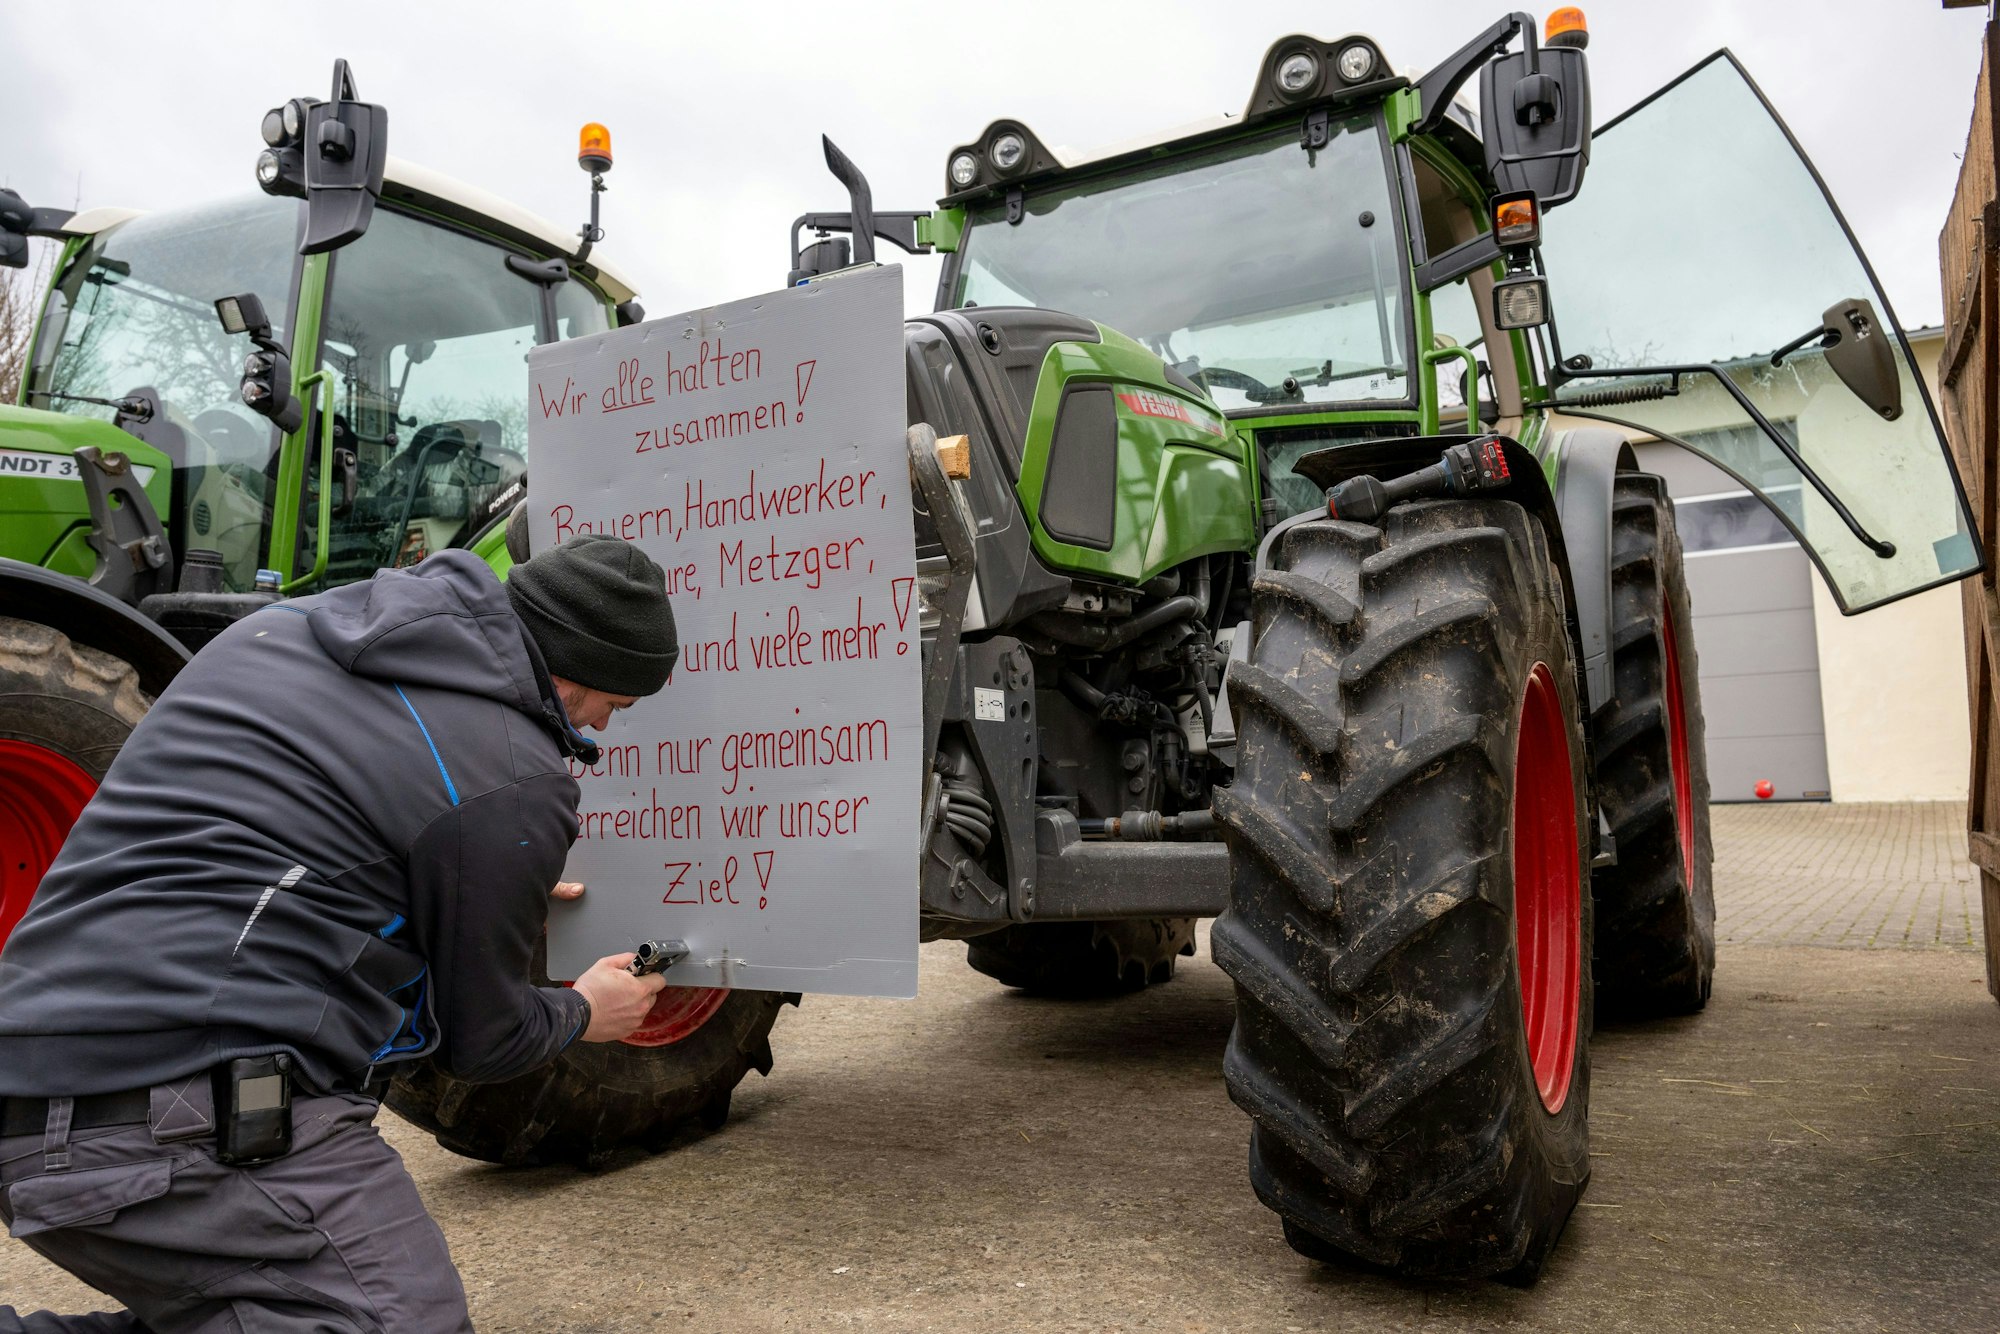 07.01.2024, Bayern, Wüstenwelsberg: Ein Mann befestigt ein Protestschild mit der Aufschrift «Wir alle halten zusammen! Bauern, Handwerker, Spediteure, Metzger, Bäcker, und viele mehr! Denn nur gemeinsam erreichen wir unser Ziel!» an einem Schlepper. Die Landwirte bereiten sich auf die anstehende Aktionswoche vor. Foto: Pia Bayer/dpa +++ dpa-Bildfunk +++